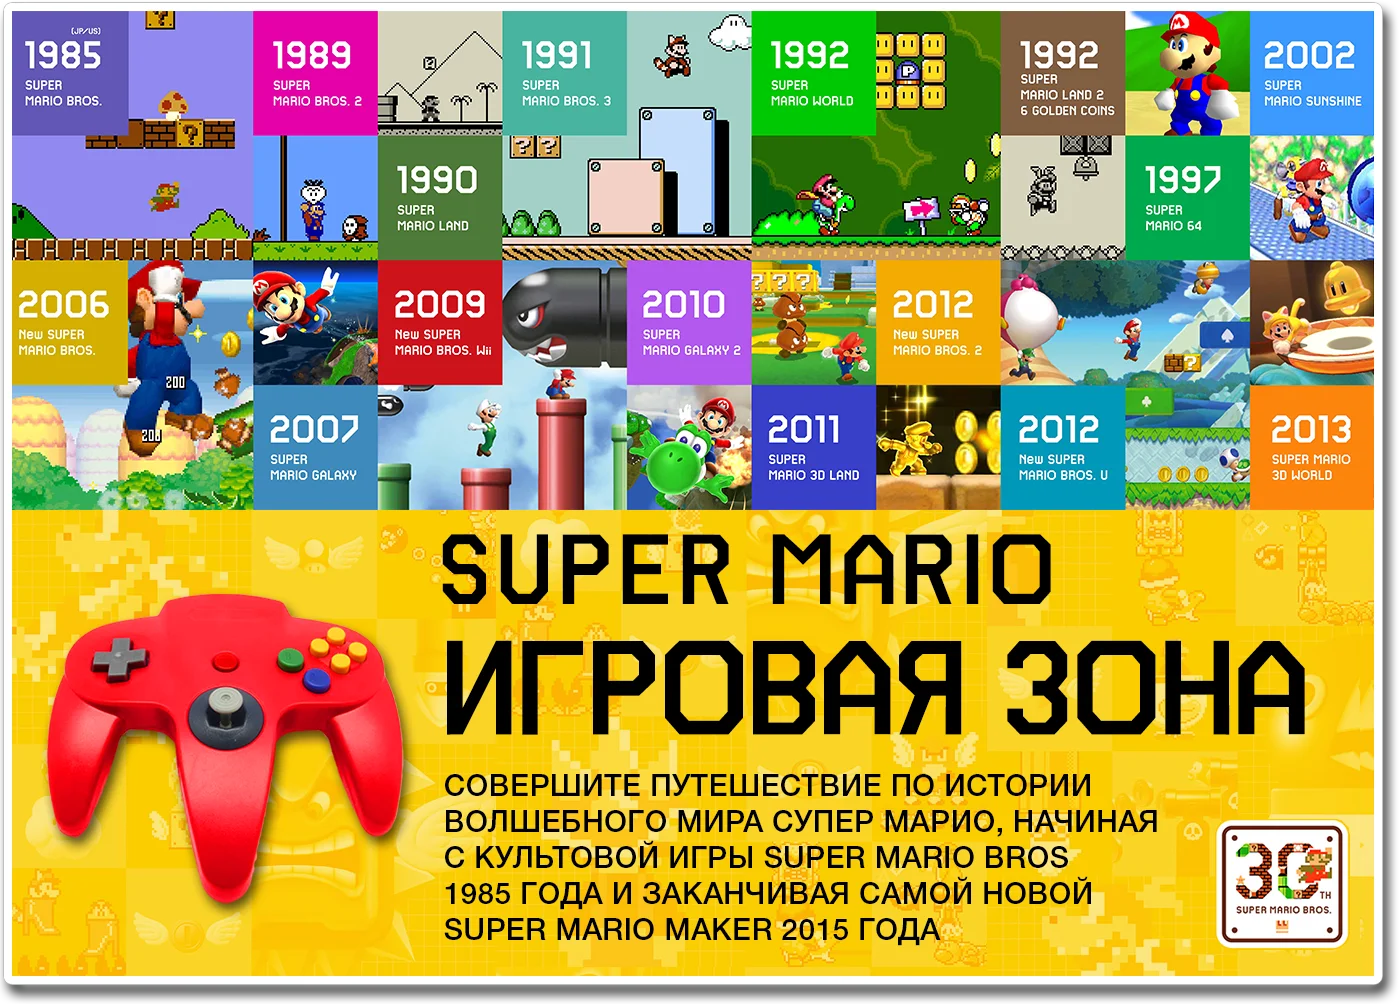 
Как в разных странах отметили 30-летие Super Mario Bros.  - фото 5